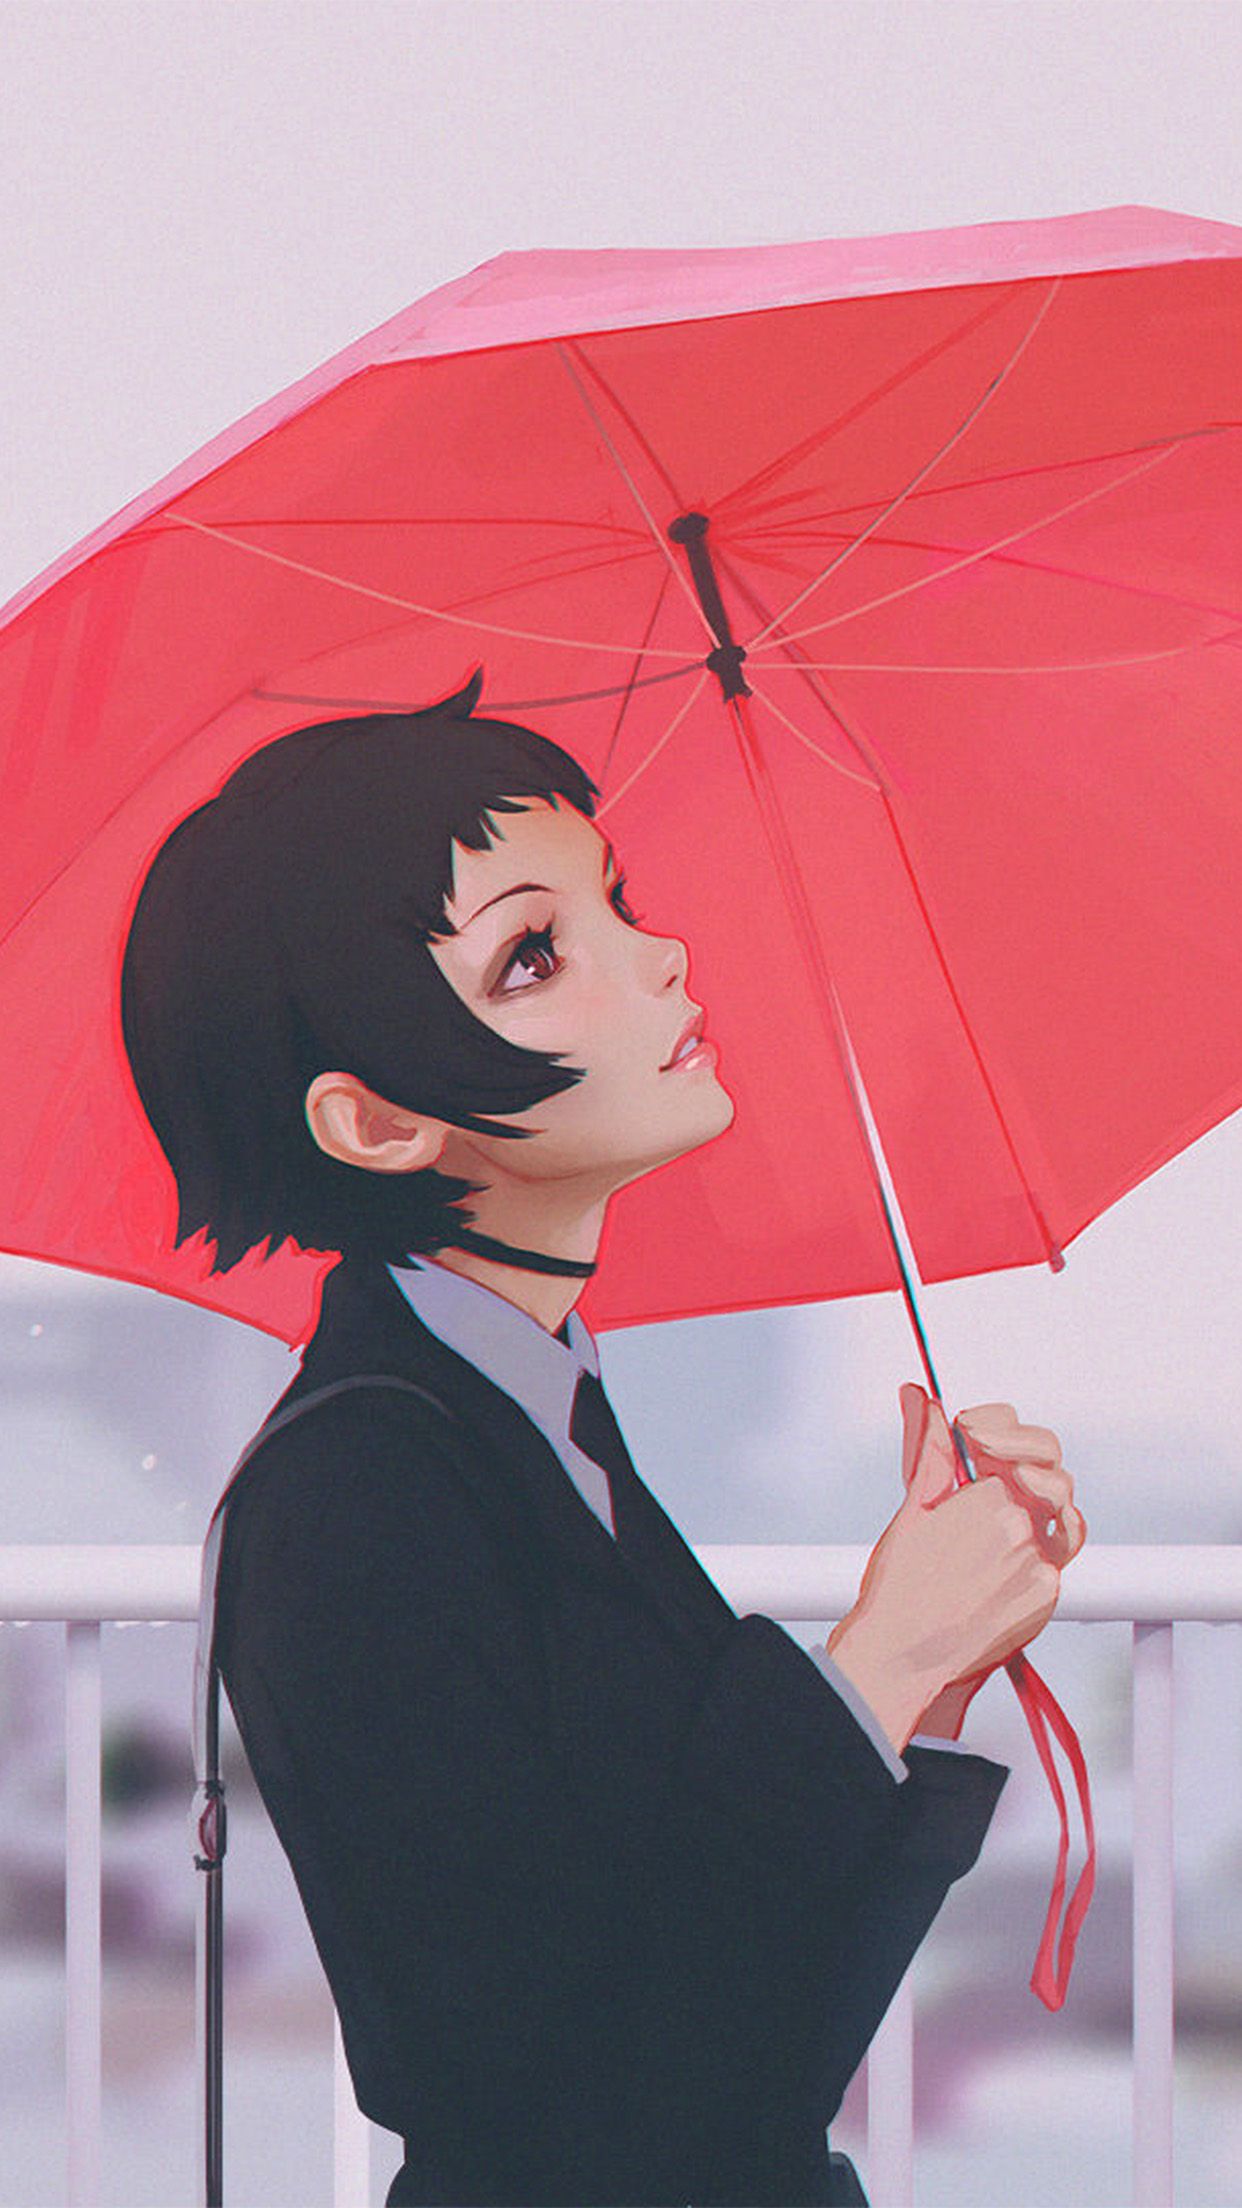 والپیپر رویایی موبایل با طرح دختر با چتر قرمز در باران 